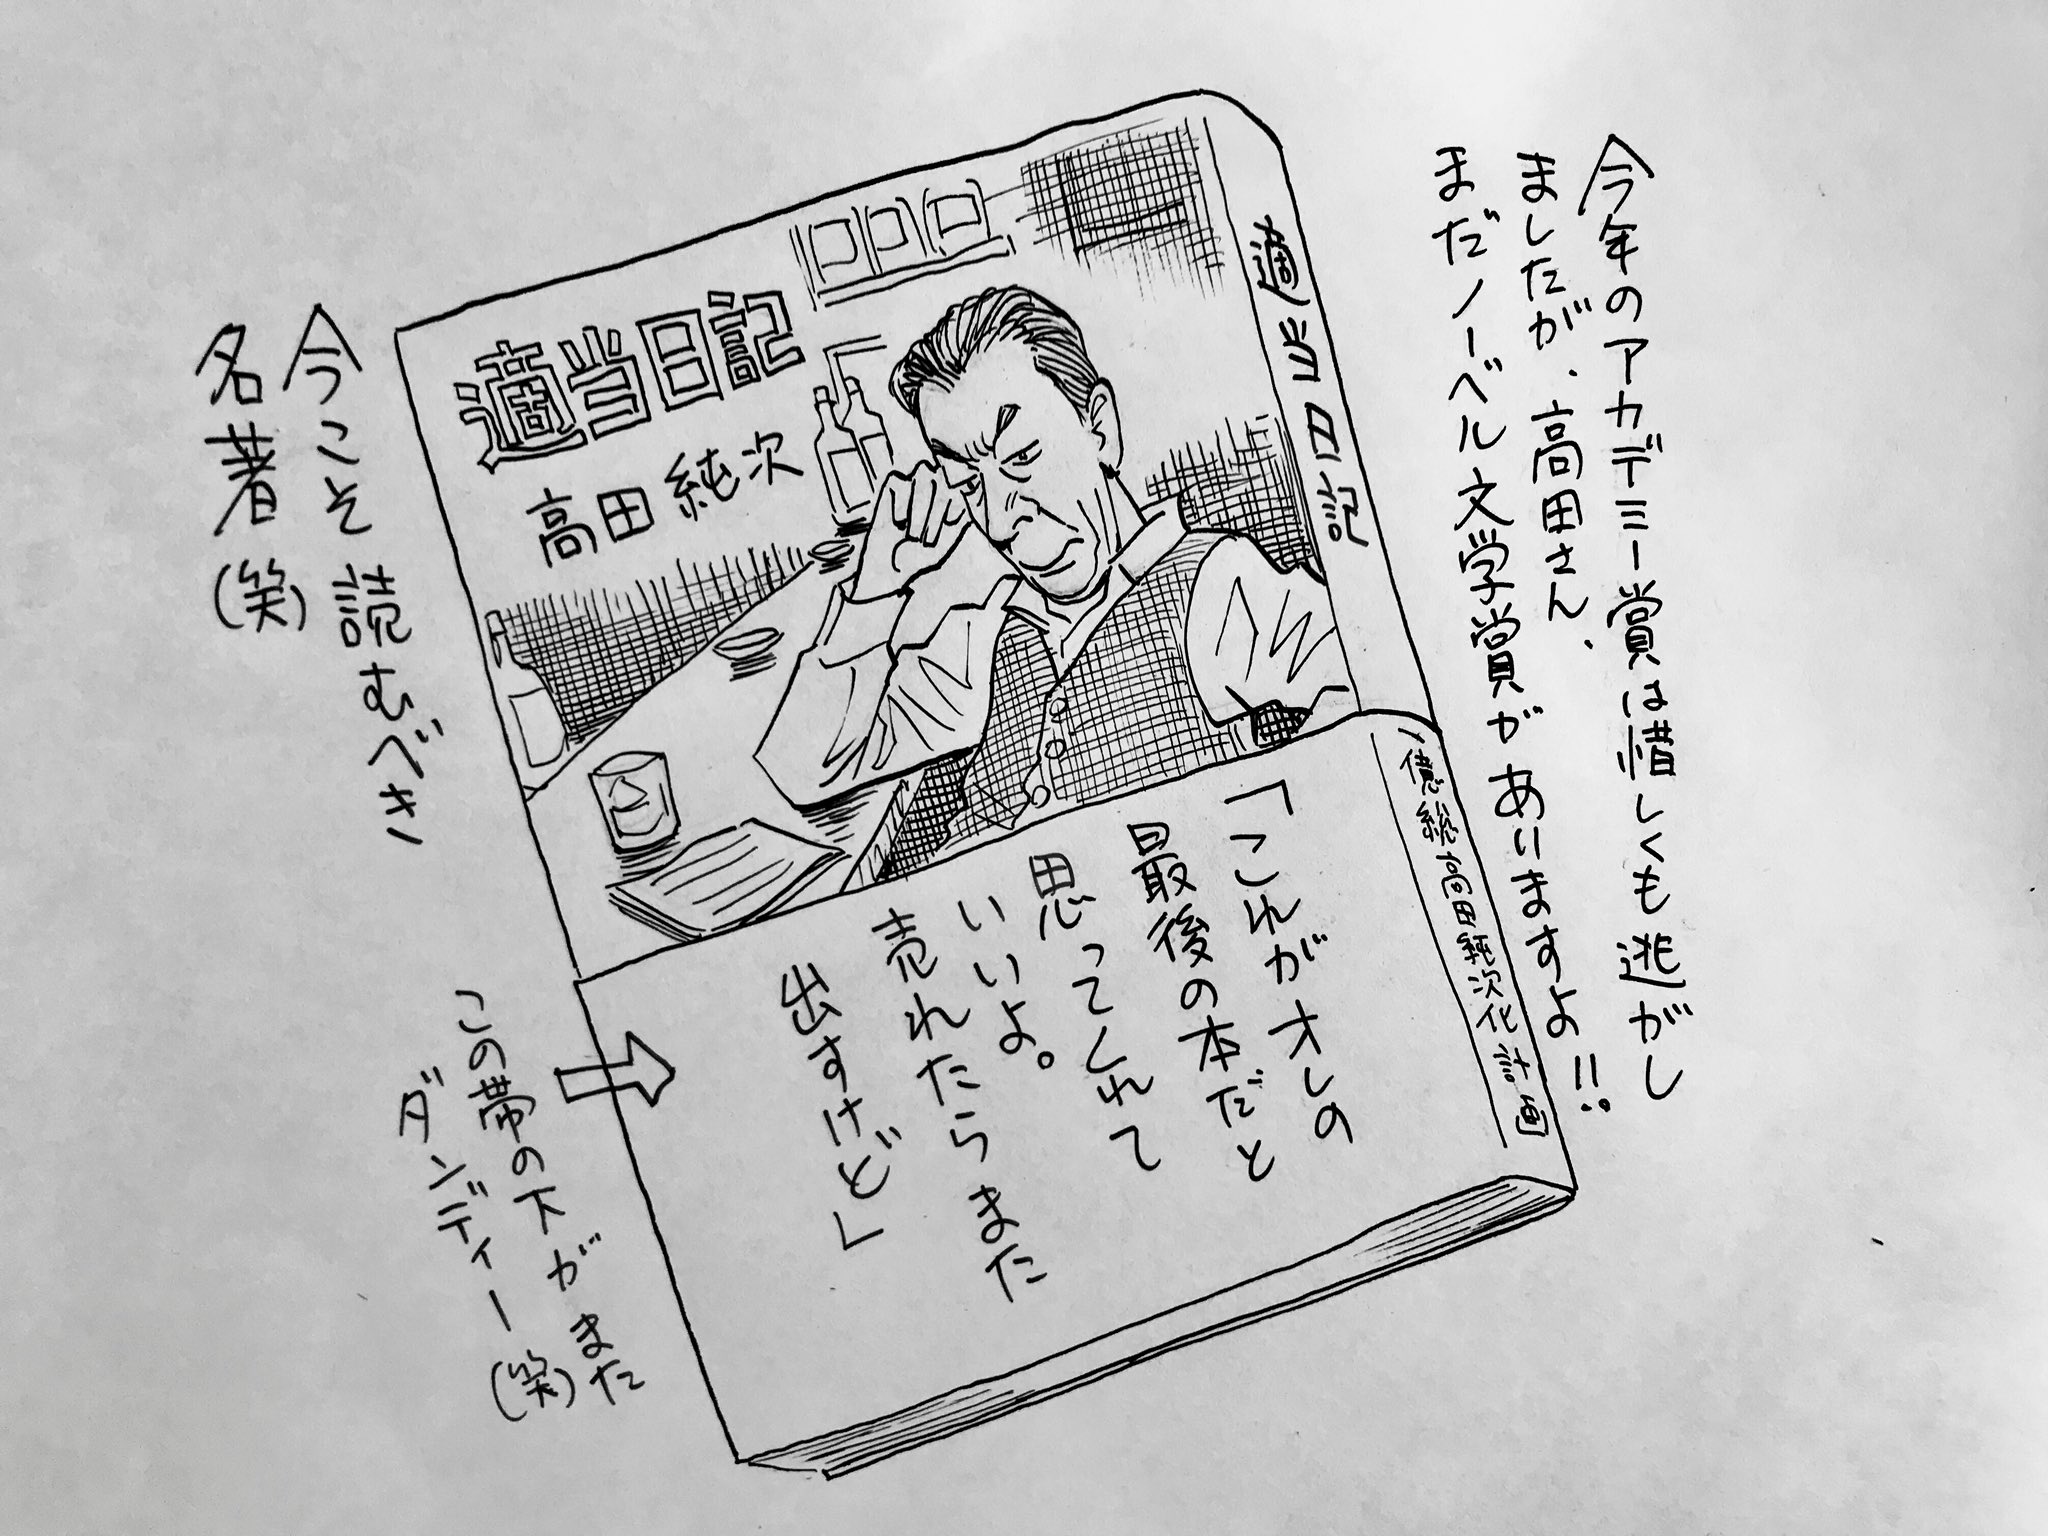 浦沢直樹 Naoki Urasawa公式情報 本日も日曜夕方5時は文化放送 純次と直樹 今回は高田純次 さんが60歳の時に出版された名著 適当日記 を語りあいます 春樹ストならぬ純次ストならもちろん持ってますよね さあどんな本なのかな Radikoのタイム